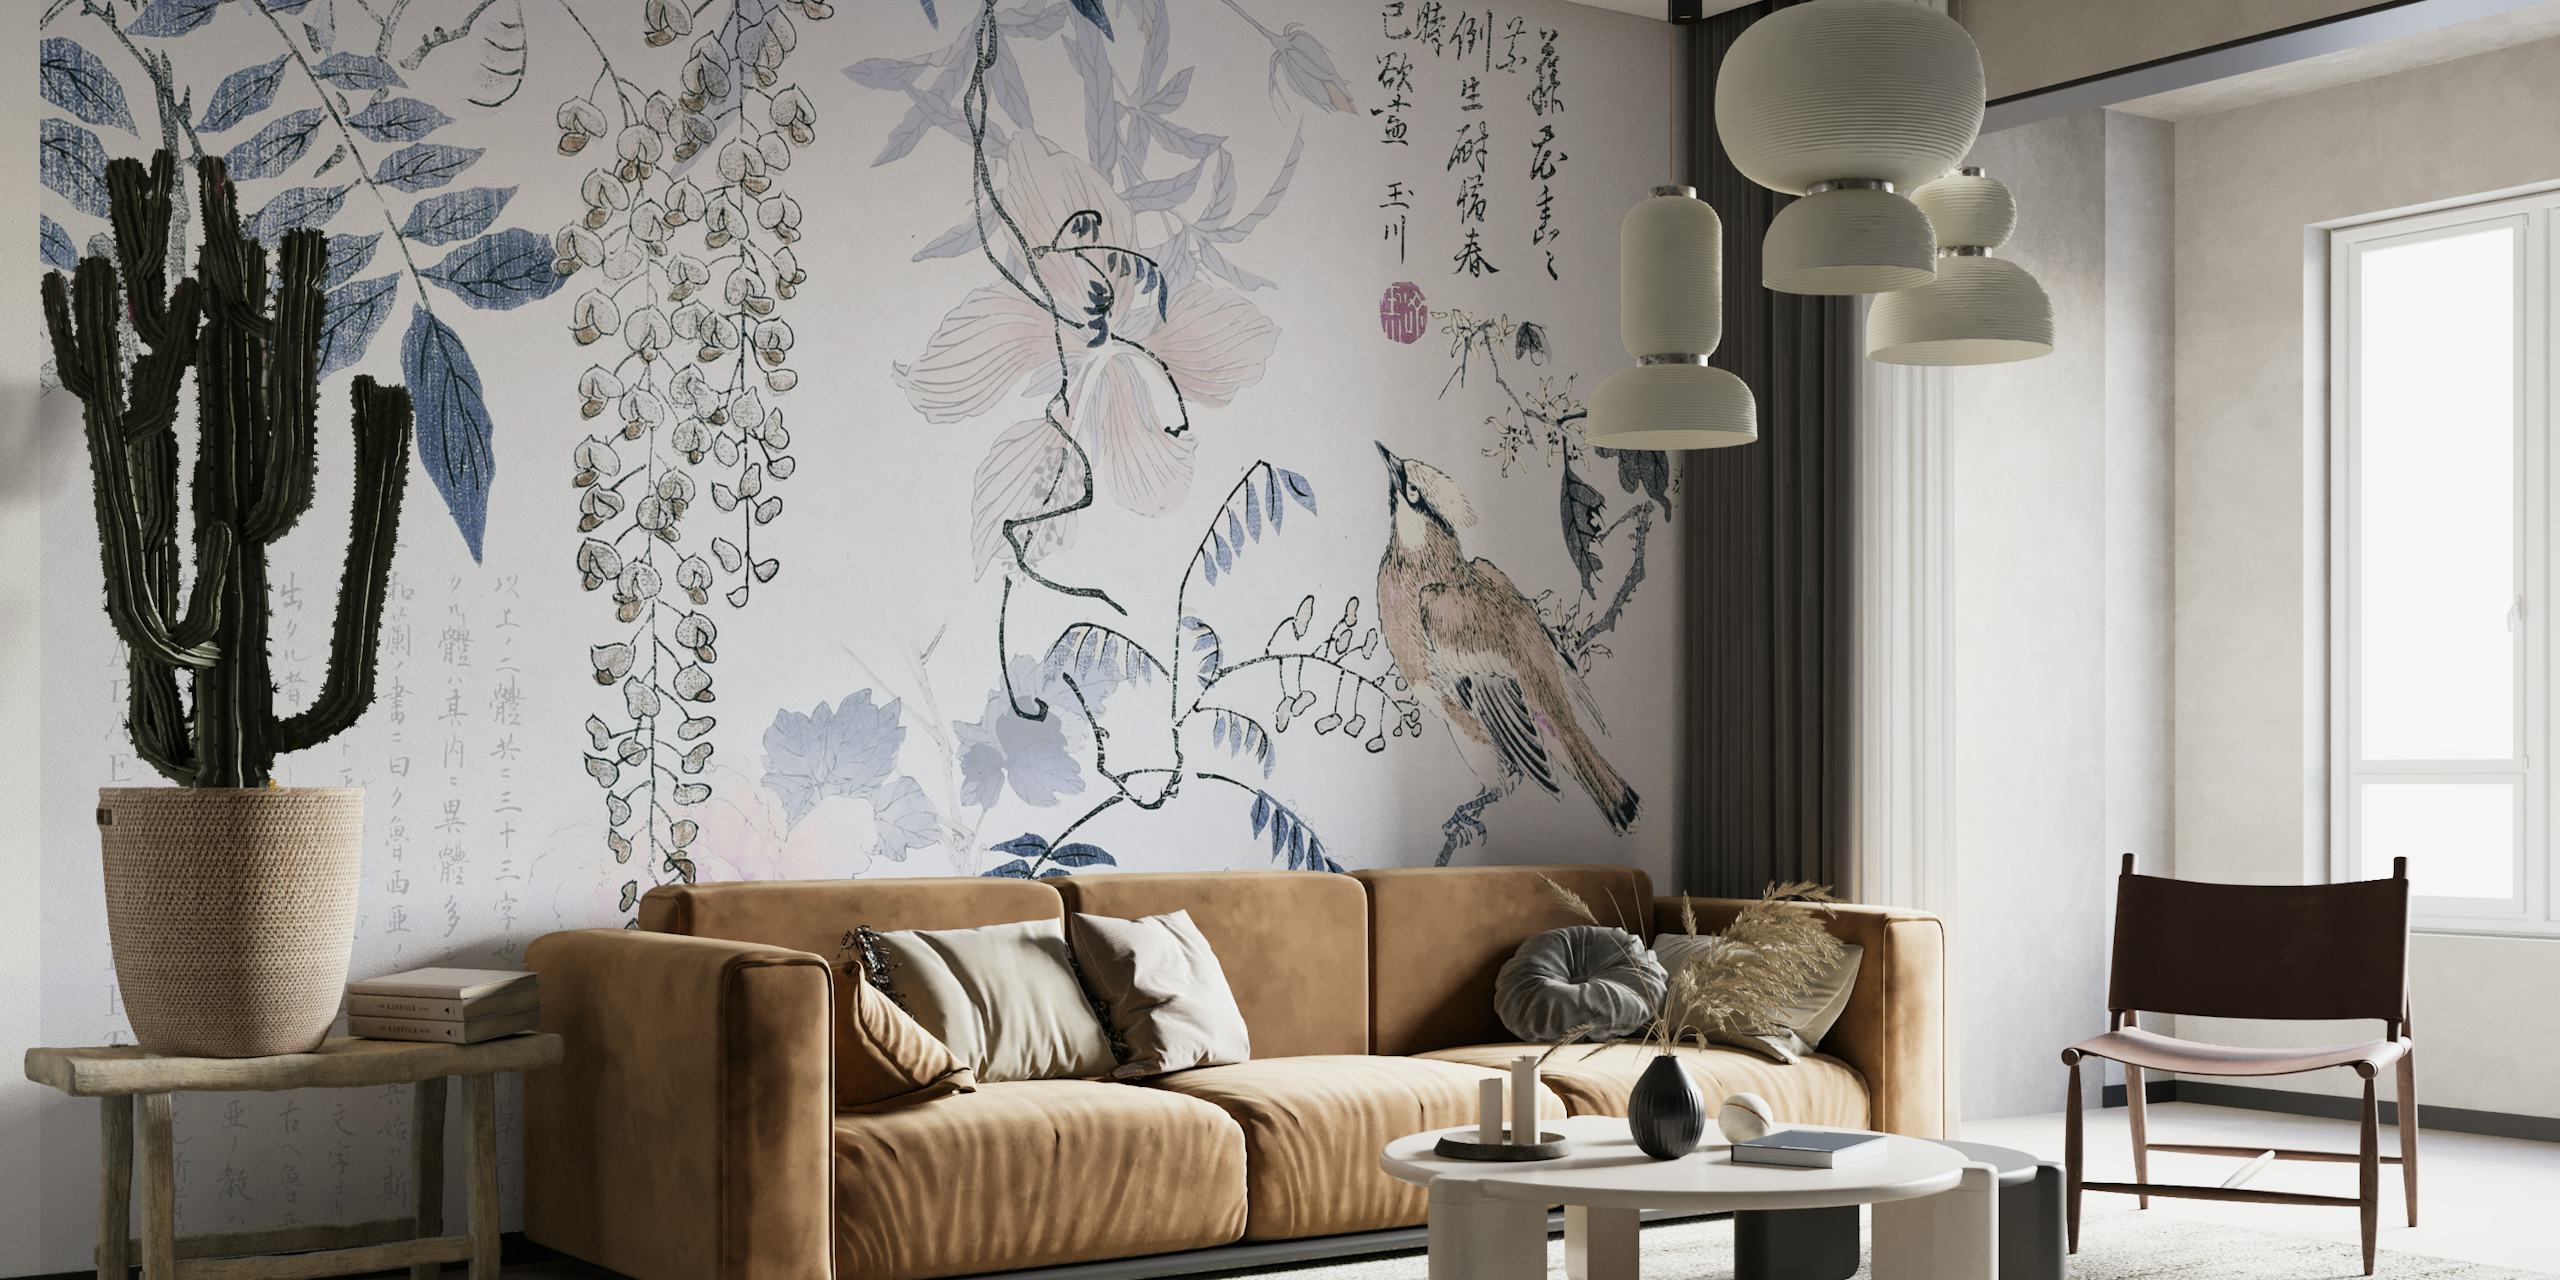 Elegante mural chinoiserie con pájaros y glicinas